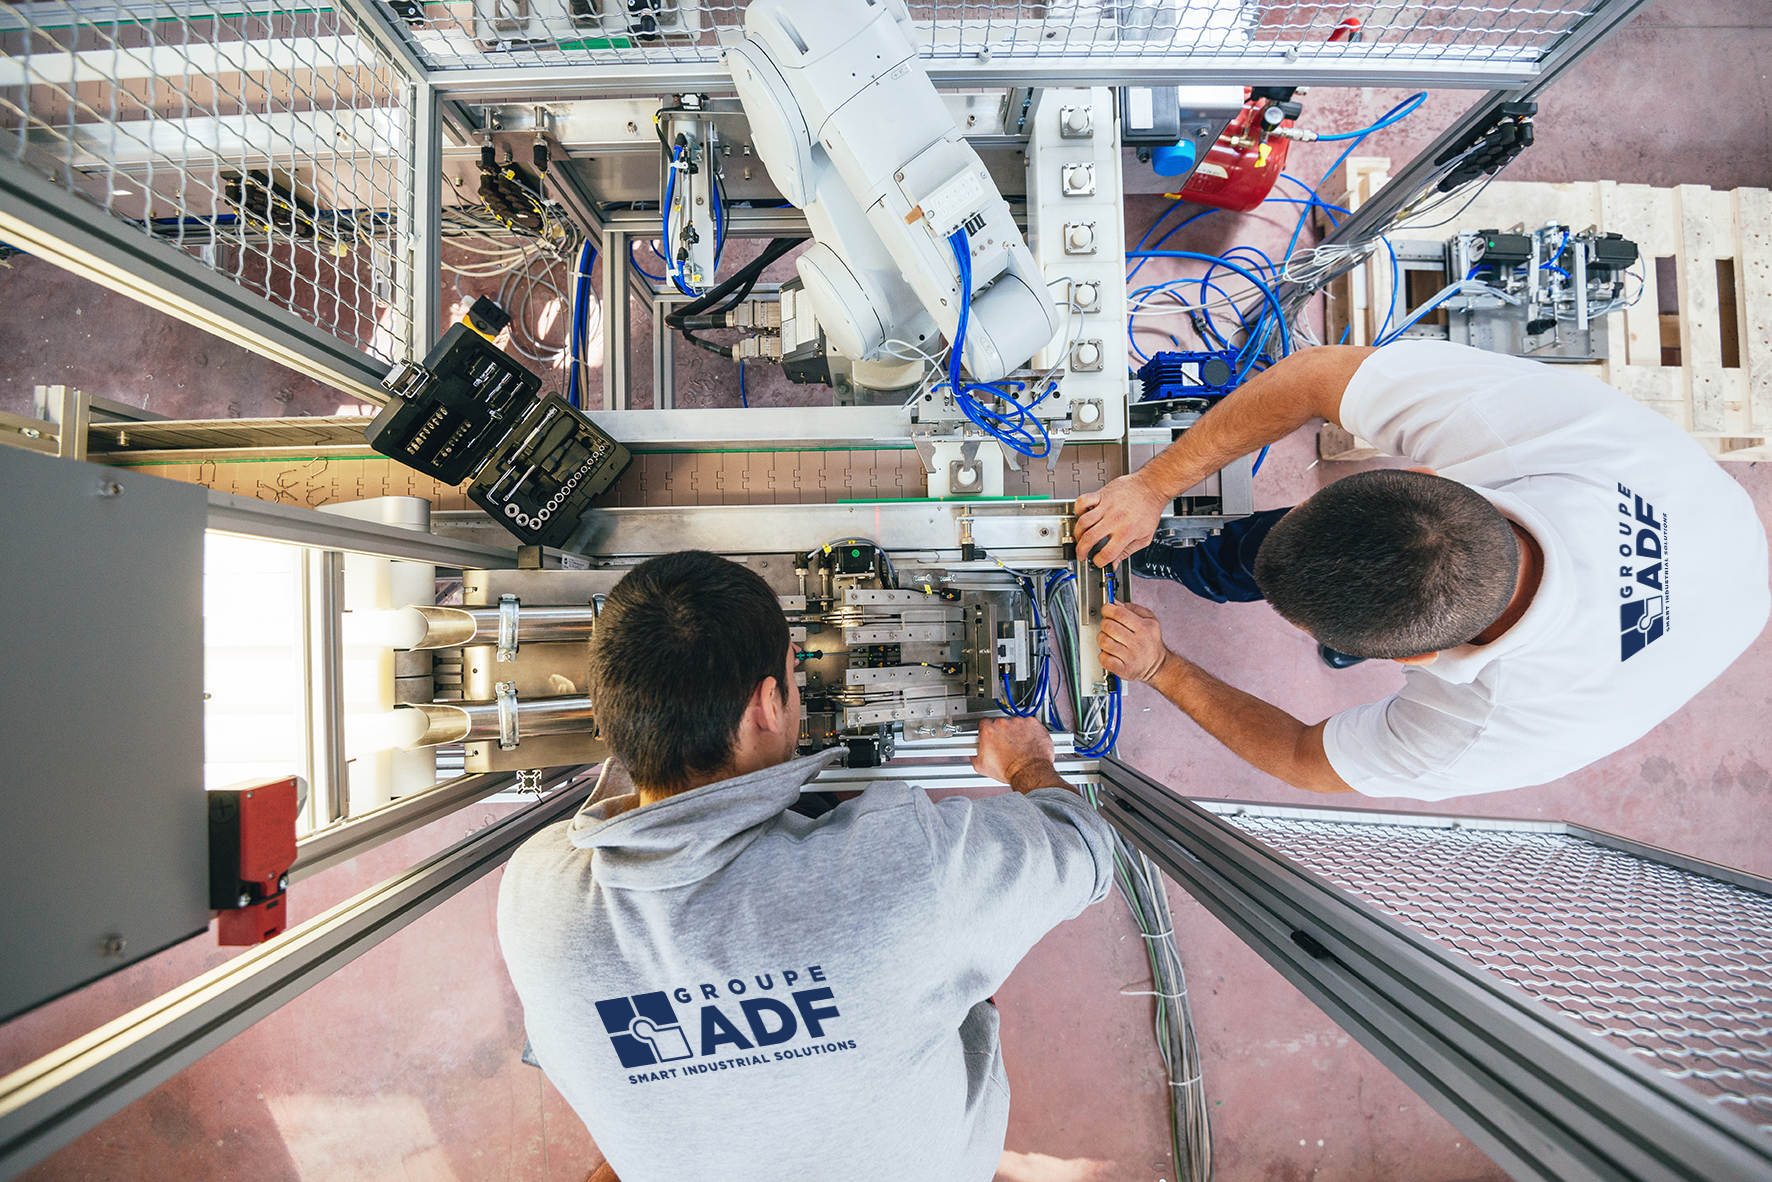 Image vue de dessus : 2 hommes avec polos travaillant sur du matériel électrique - illustration société ADF